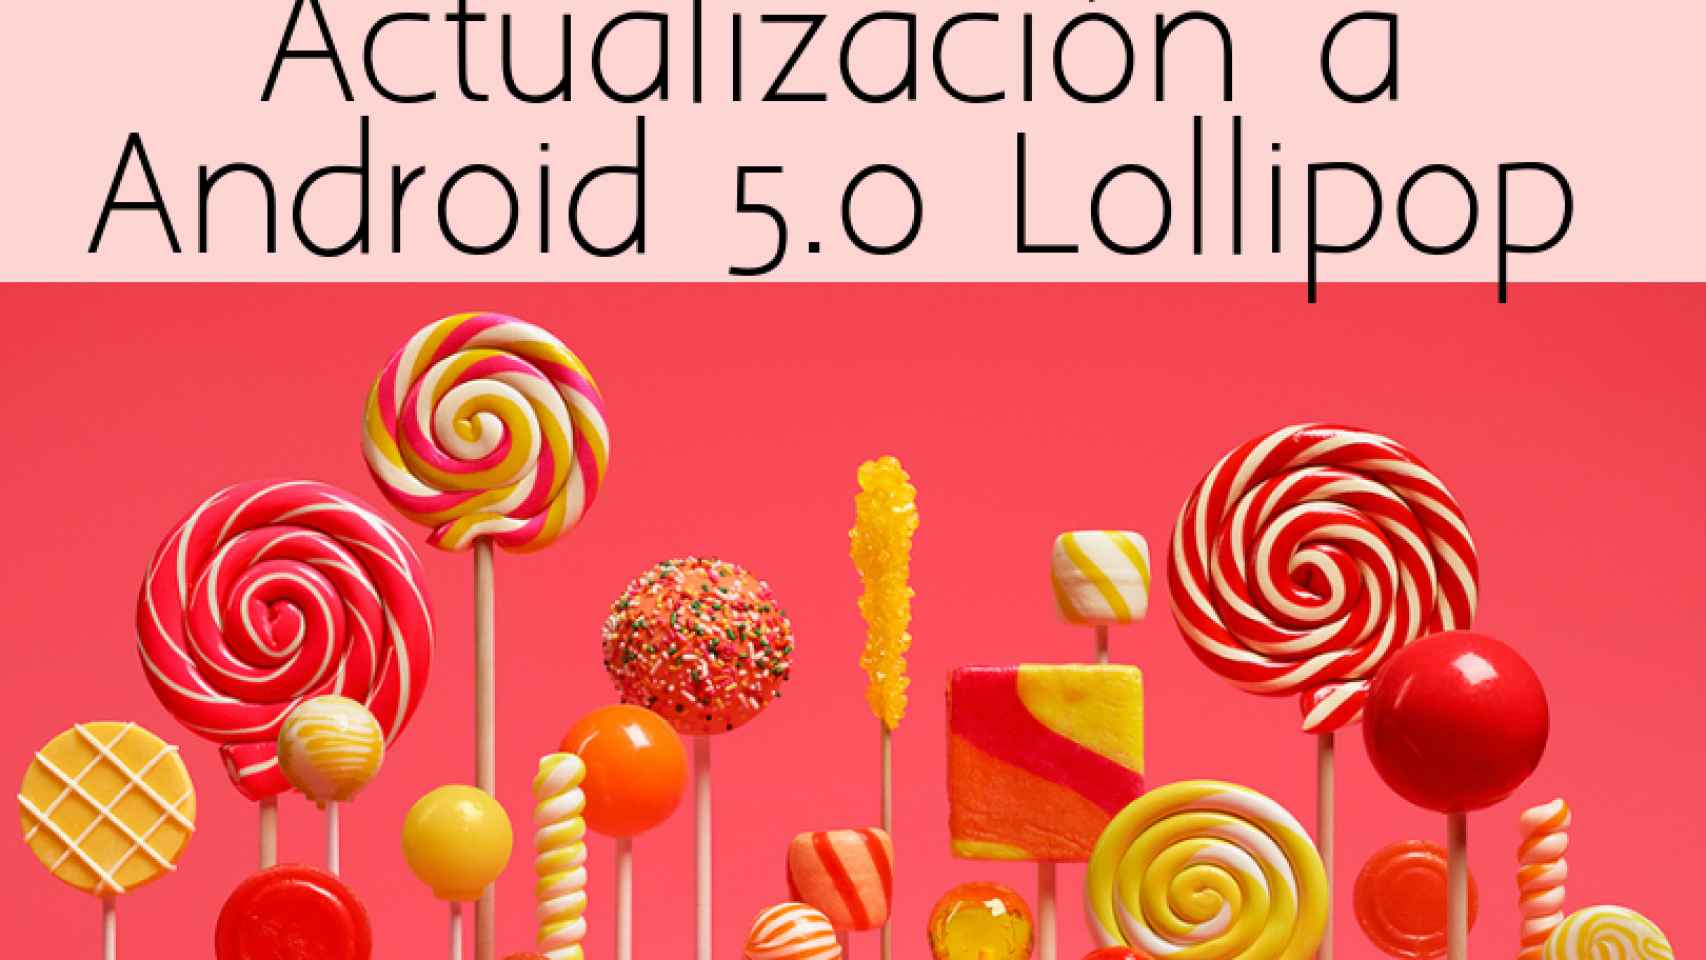 Todos los Android que tendrán actualización a Android 5.0 Lollipop